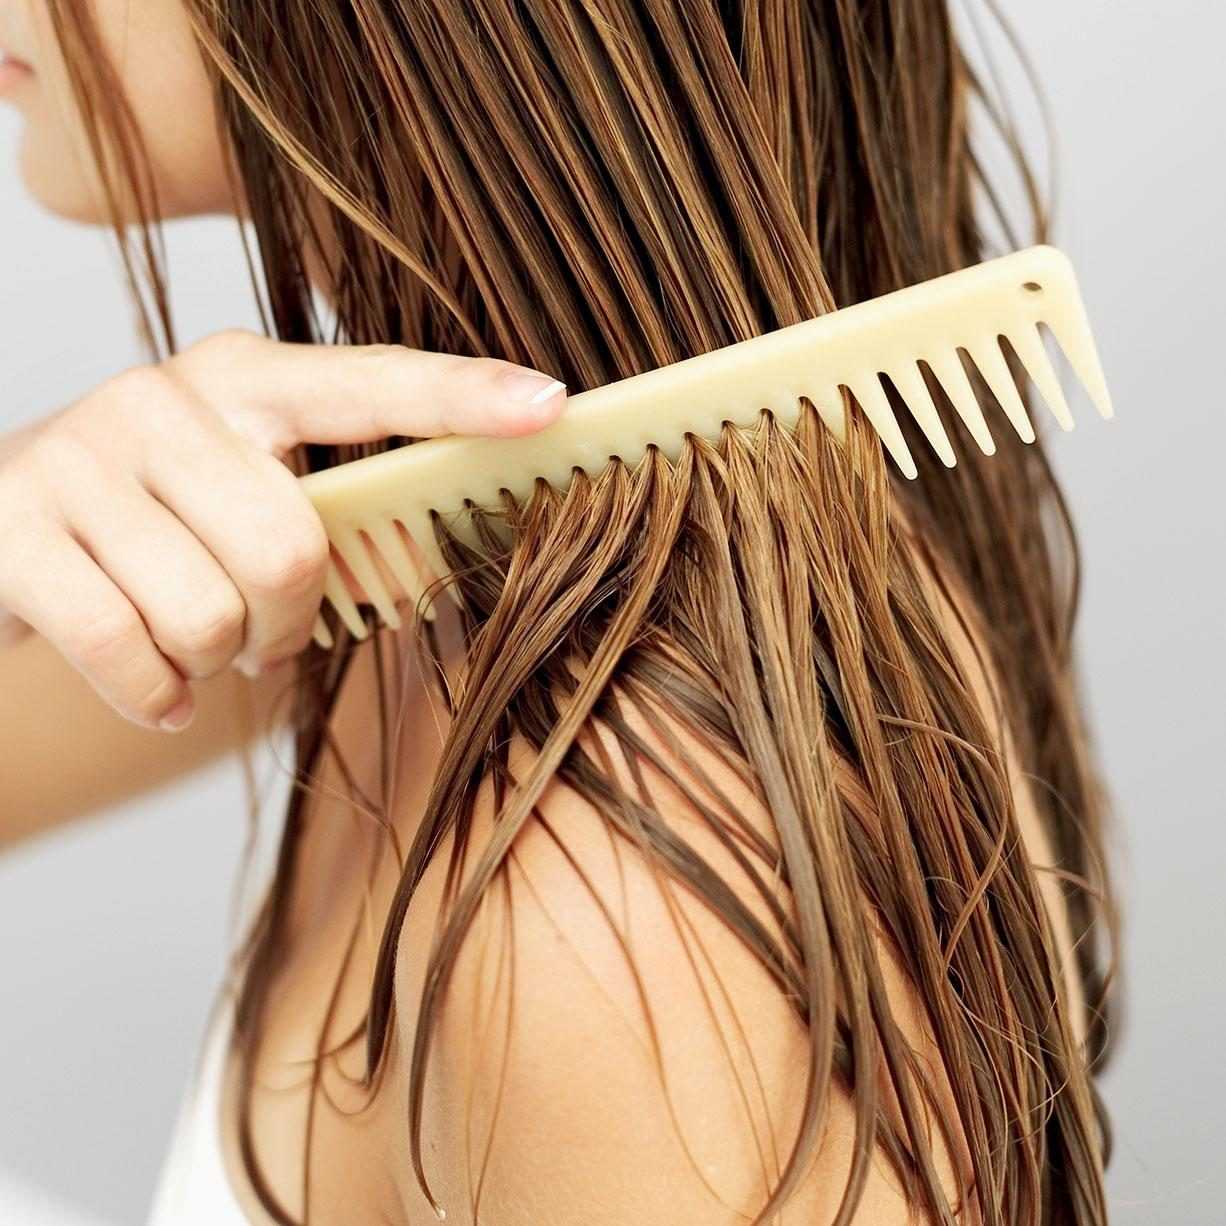 Расчесывание волос польза. как правильно расчесывать волосы